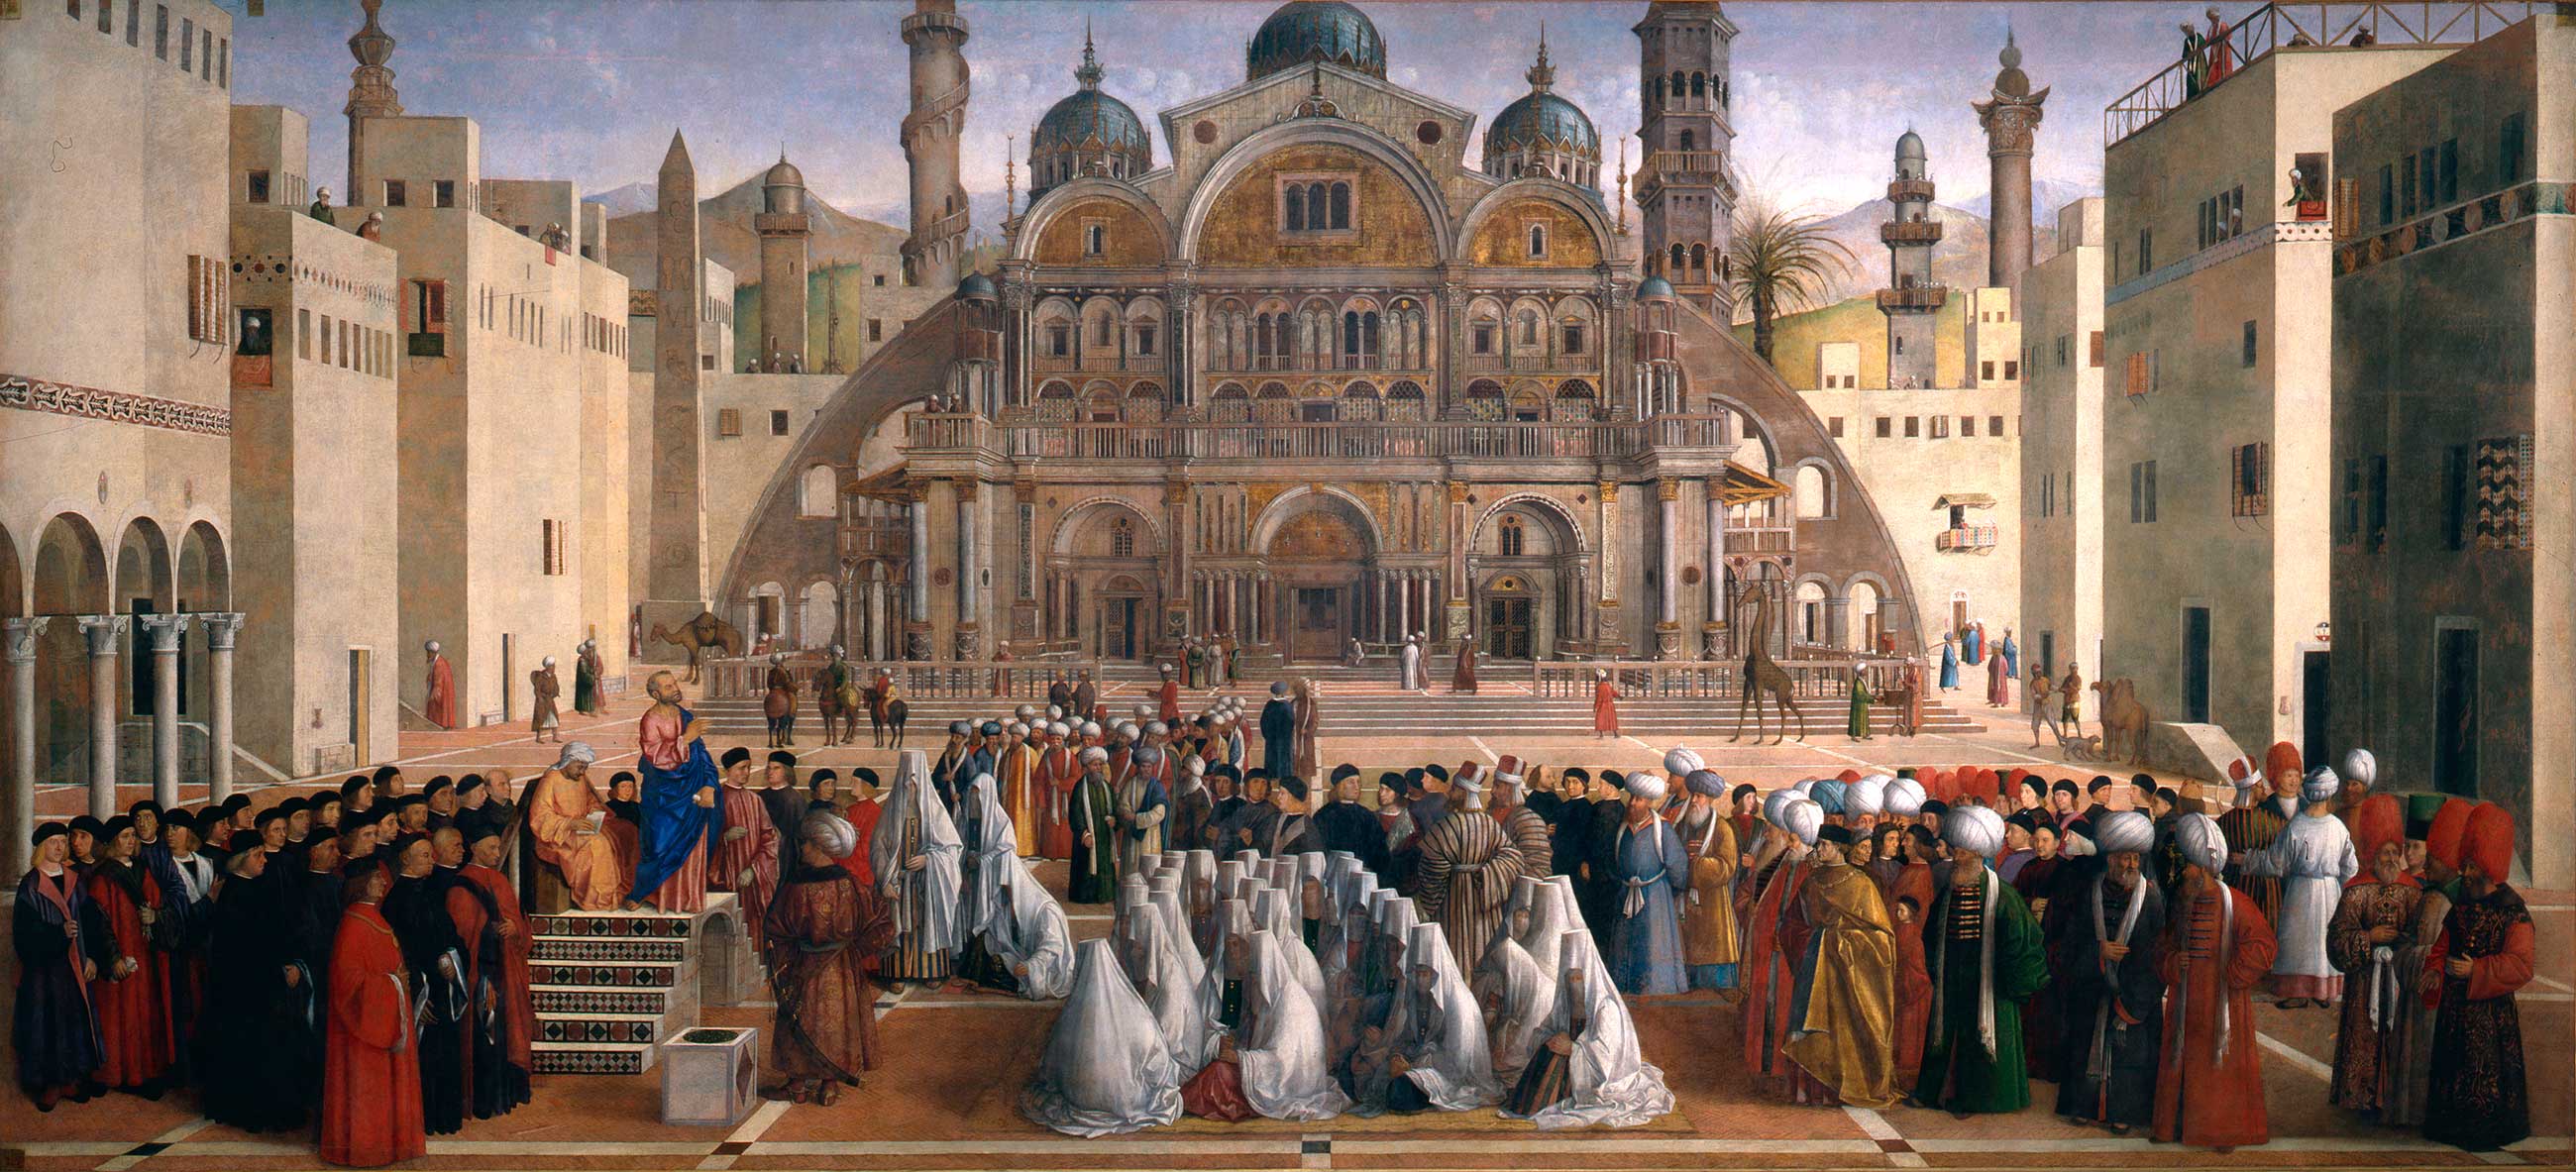 Kázání svatého Marka v Alexandrii by Gentile Bellini and Giovanni Bellini - 1504-07 - 347 × 770 cm 